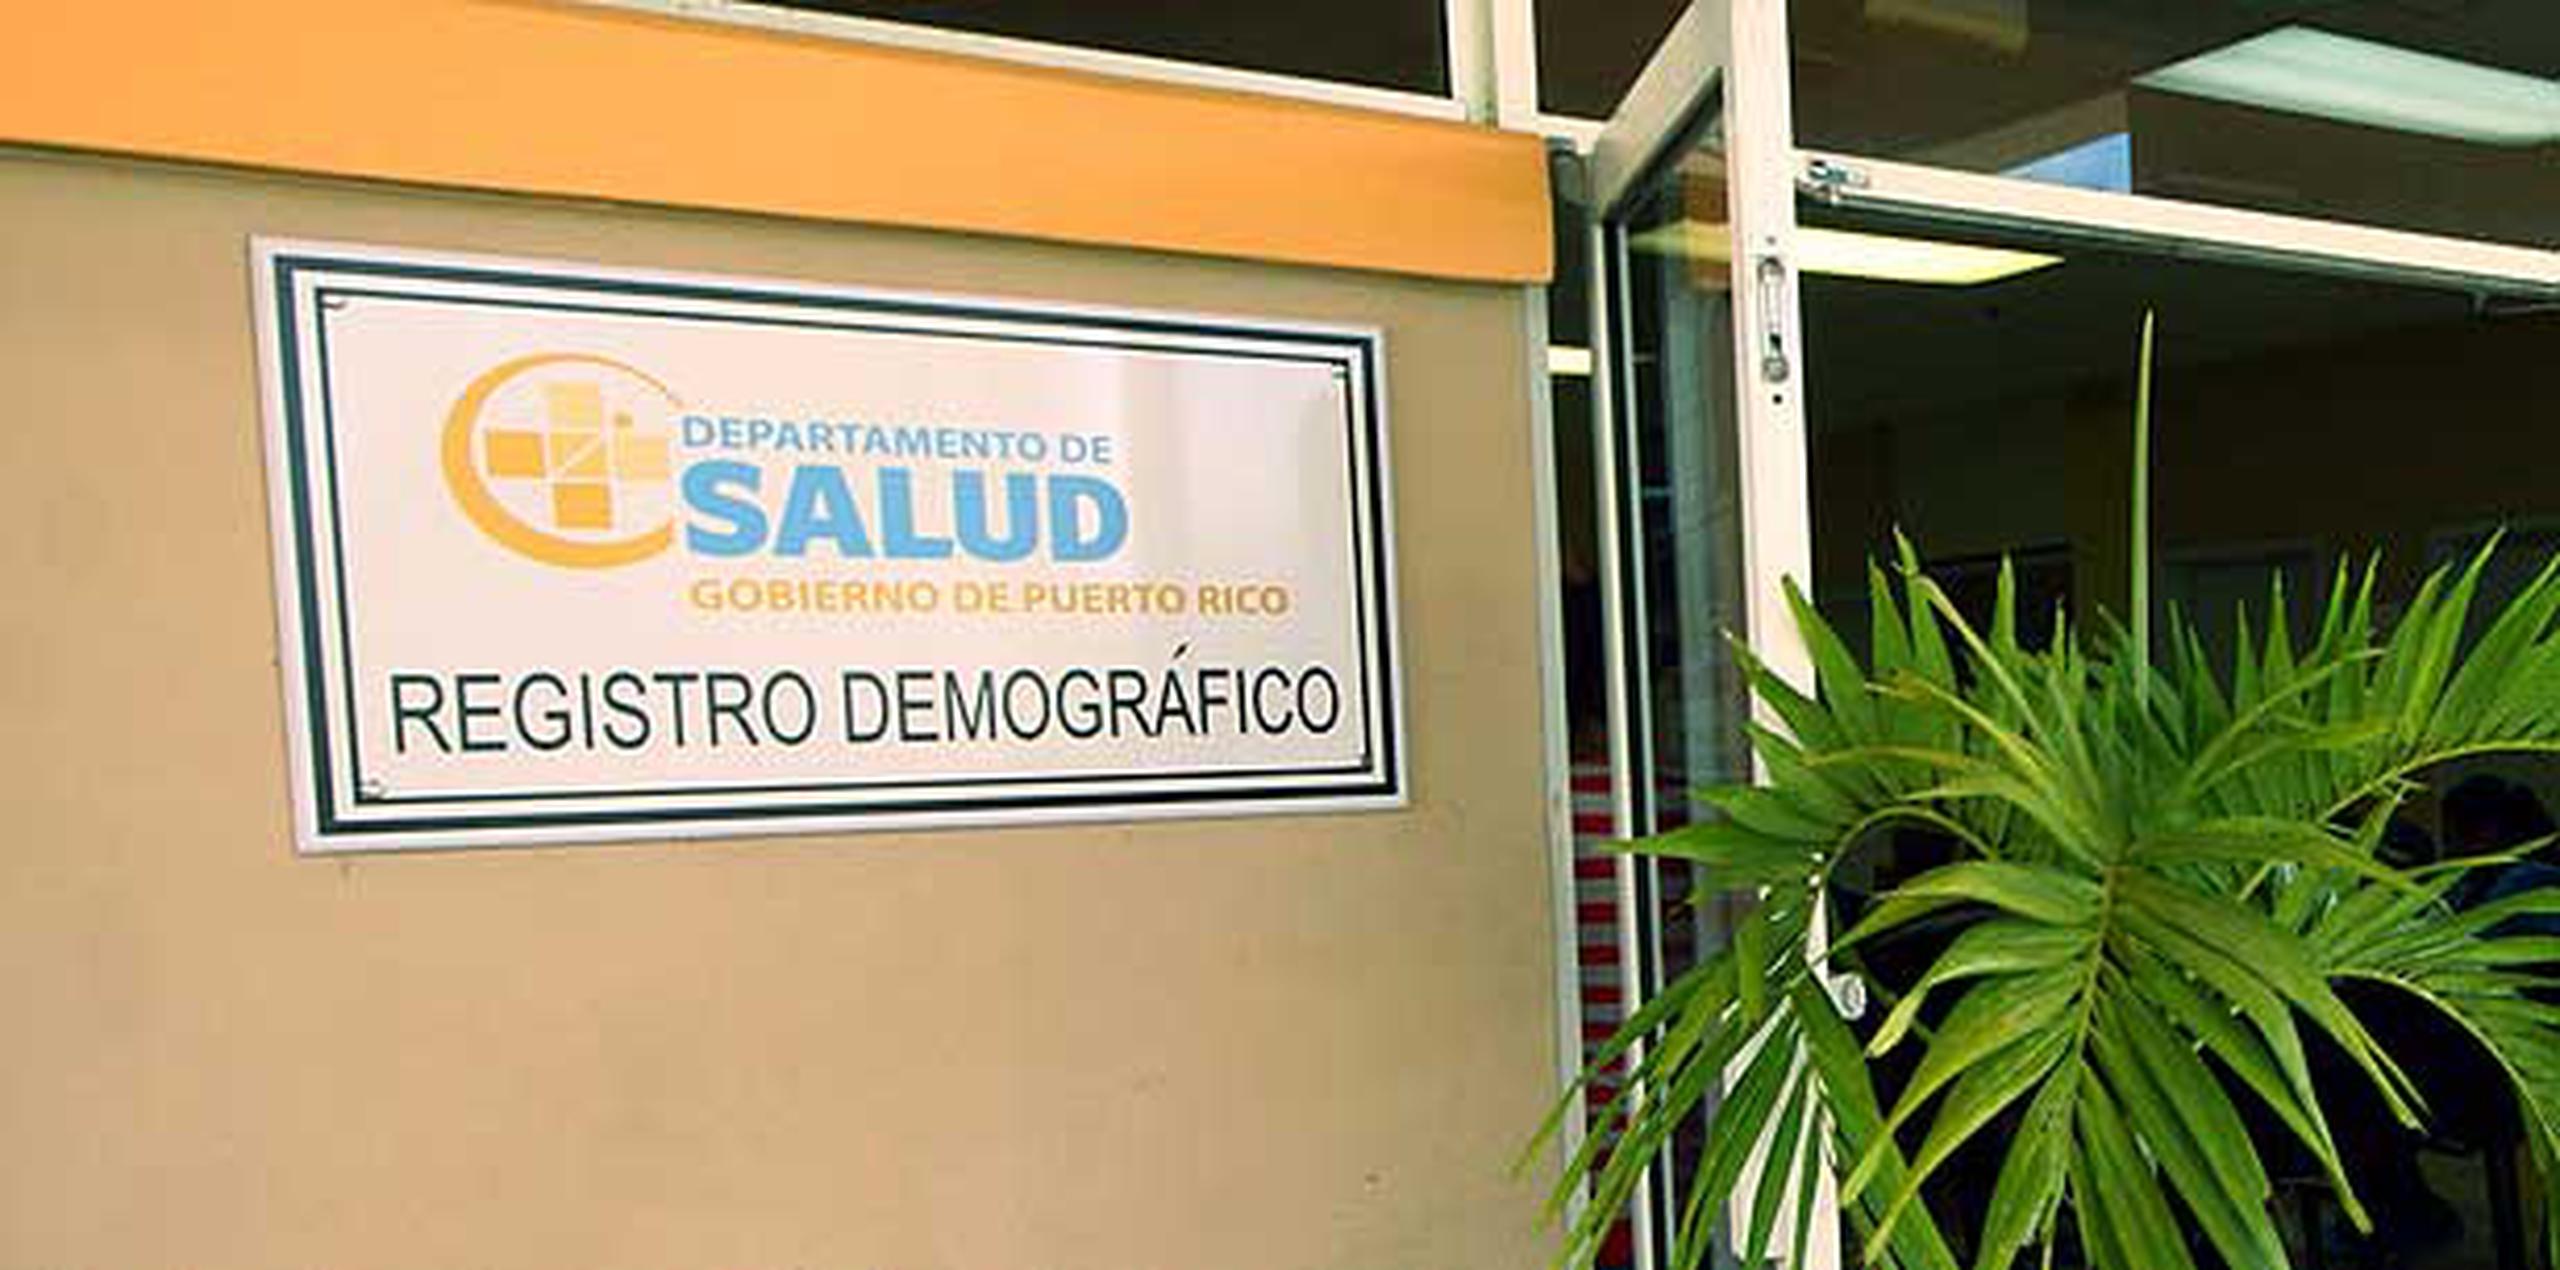 La oficina del Registro Demográfico está ubicada en el Centro de Diagnóstico y Tratamiento (CDT) de Vega Alta, en la carretera número 2. (Archivo)
